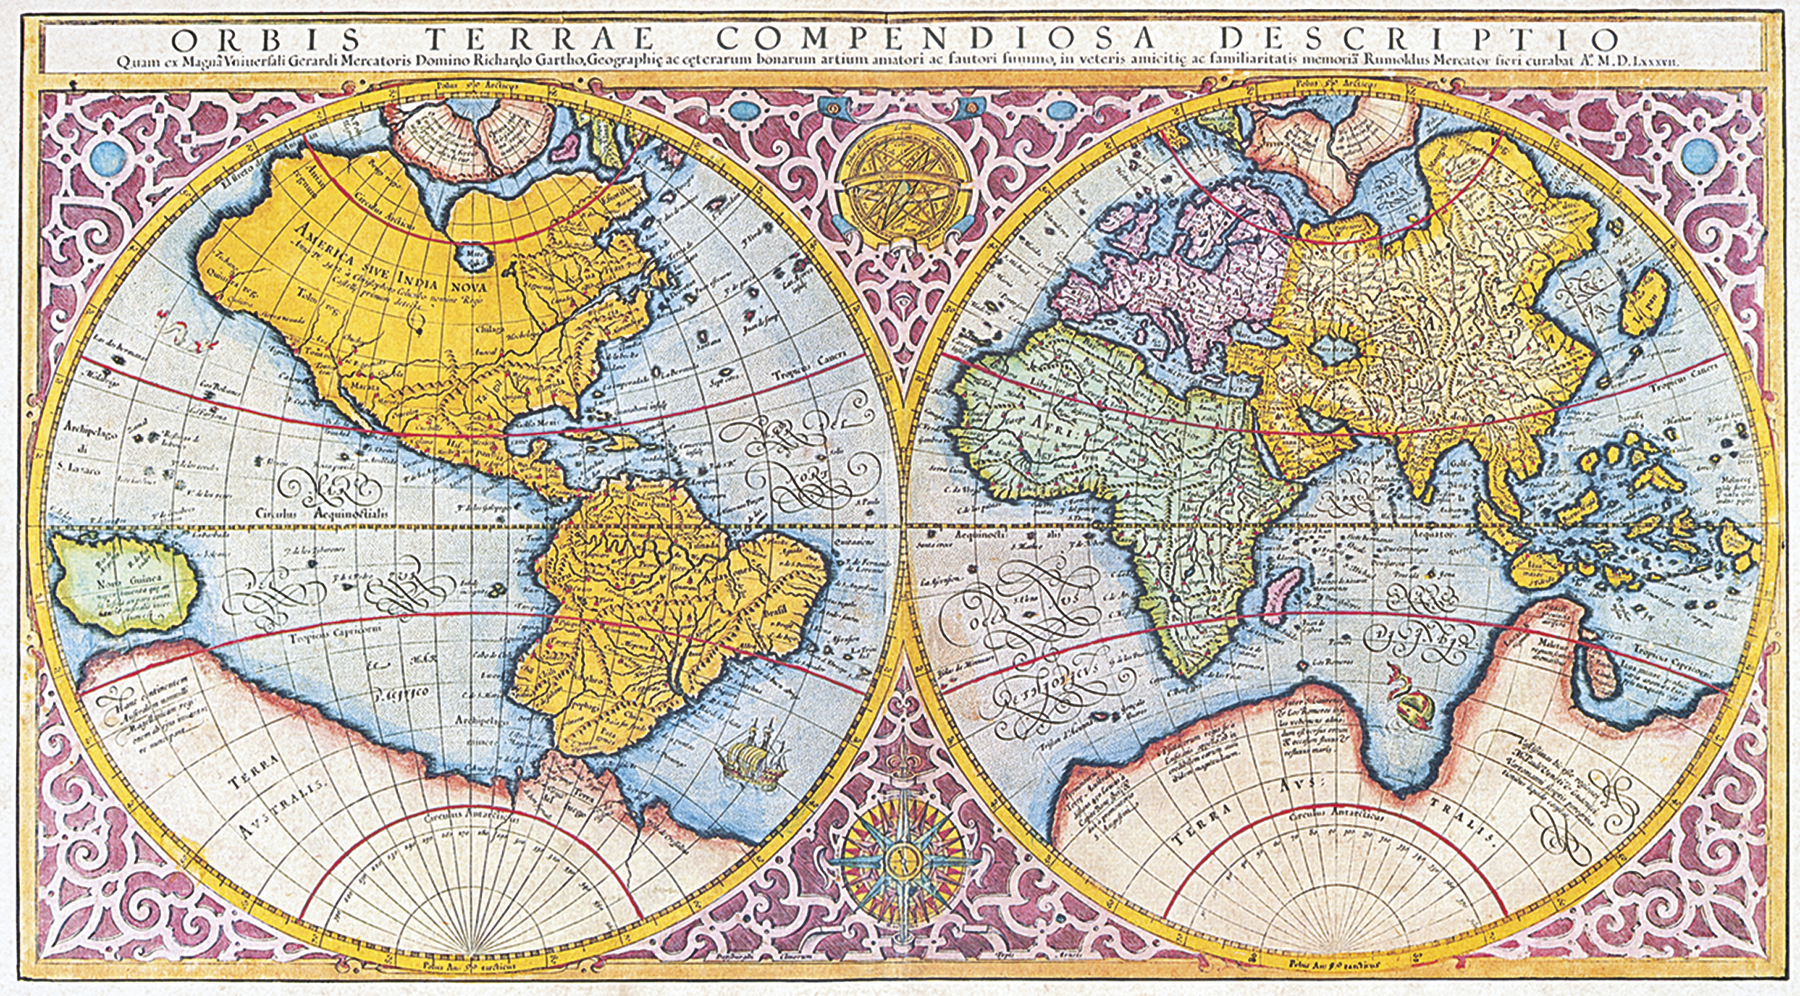 Mapa. Planisfério histórico mostrando os continentes nas posições atuais com a região da América, Antártica e Oceania com distorções.